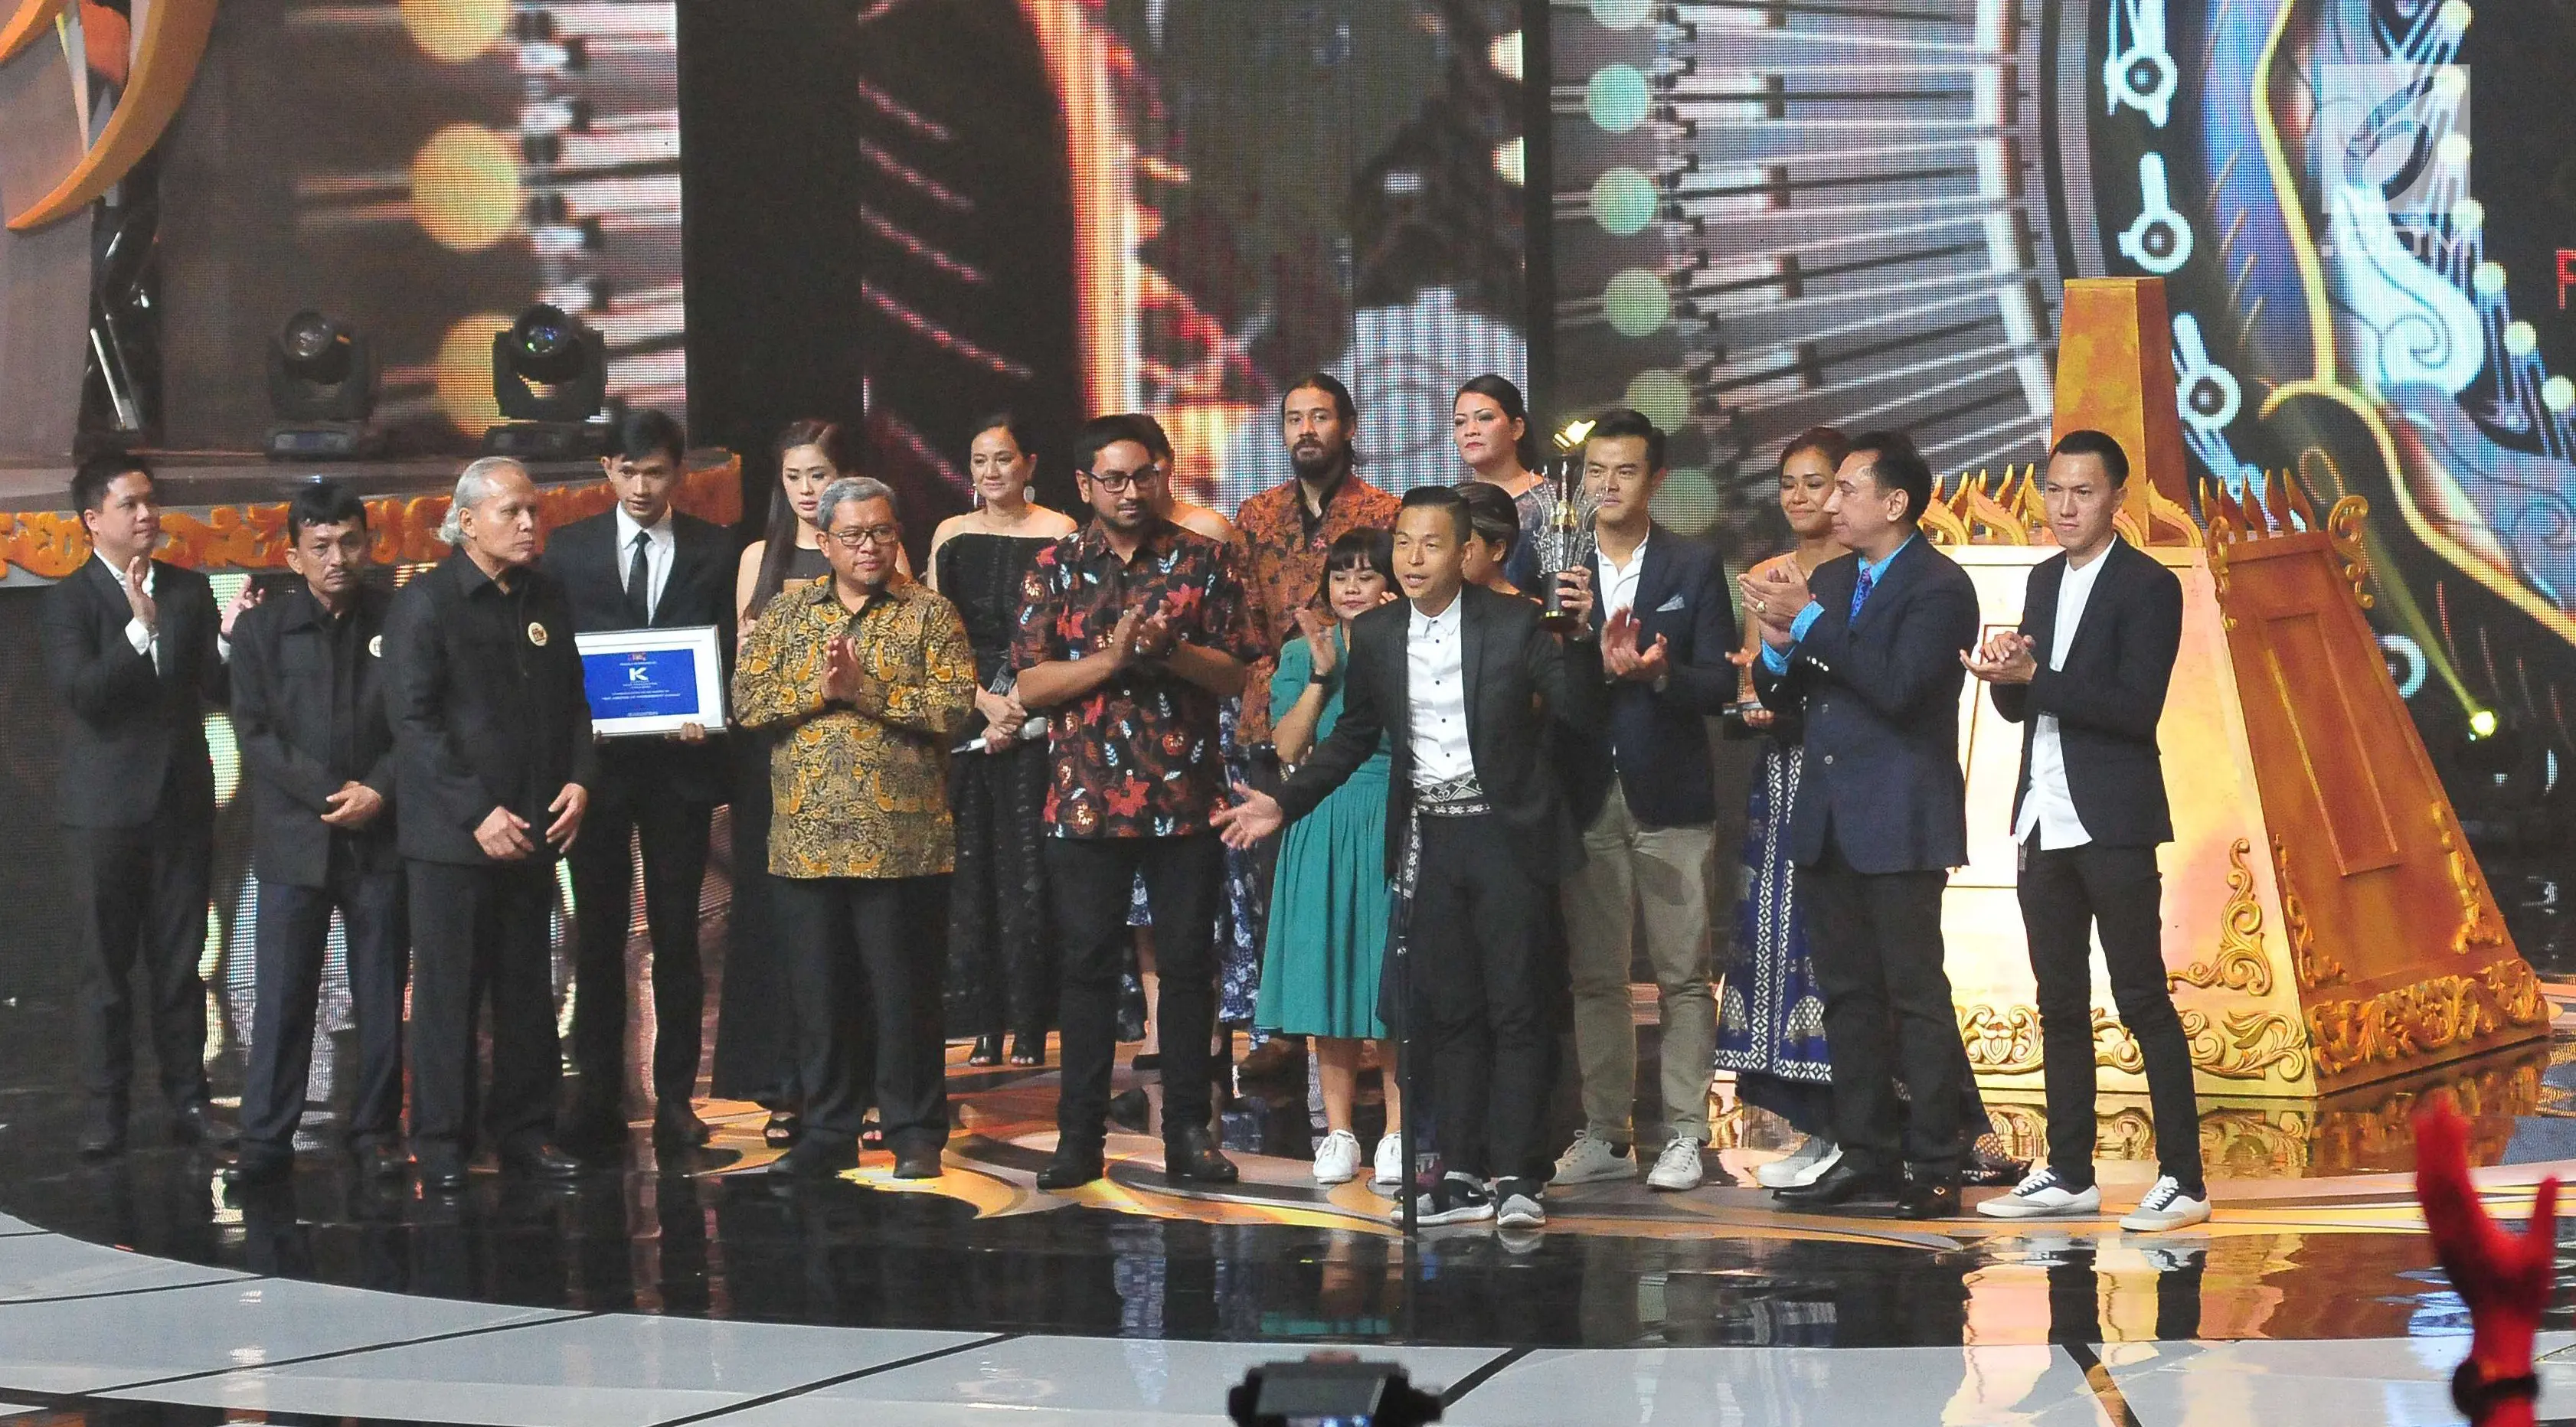 	Ernest Prakasa mengangkat piala usai film Bioskop Cek Toko Sebelah dinobatkan menjadi Film Terpuji dalam ajang Festival Film Bandung 2017 di studio 6 Emtek, Jakarta (22/10). (Liputan6.com/Helmi Afandi)